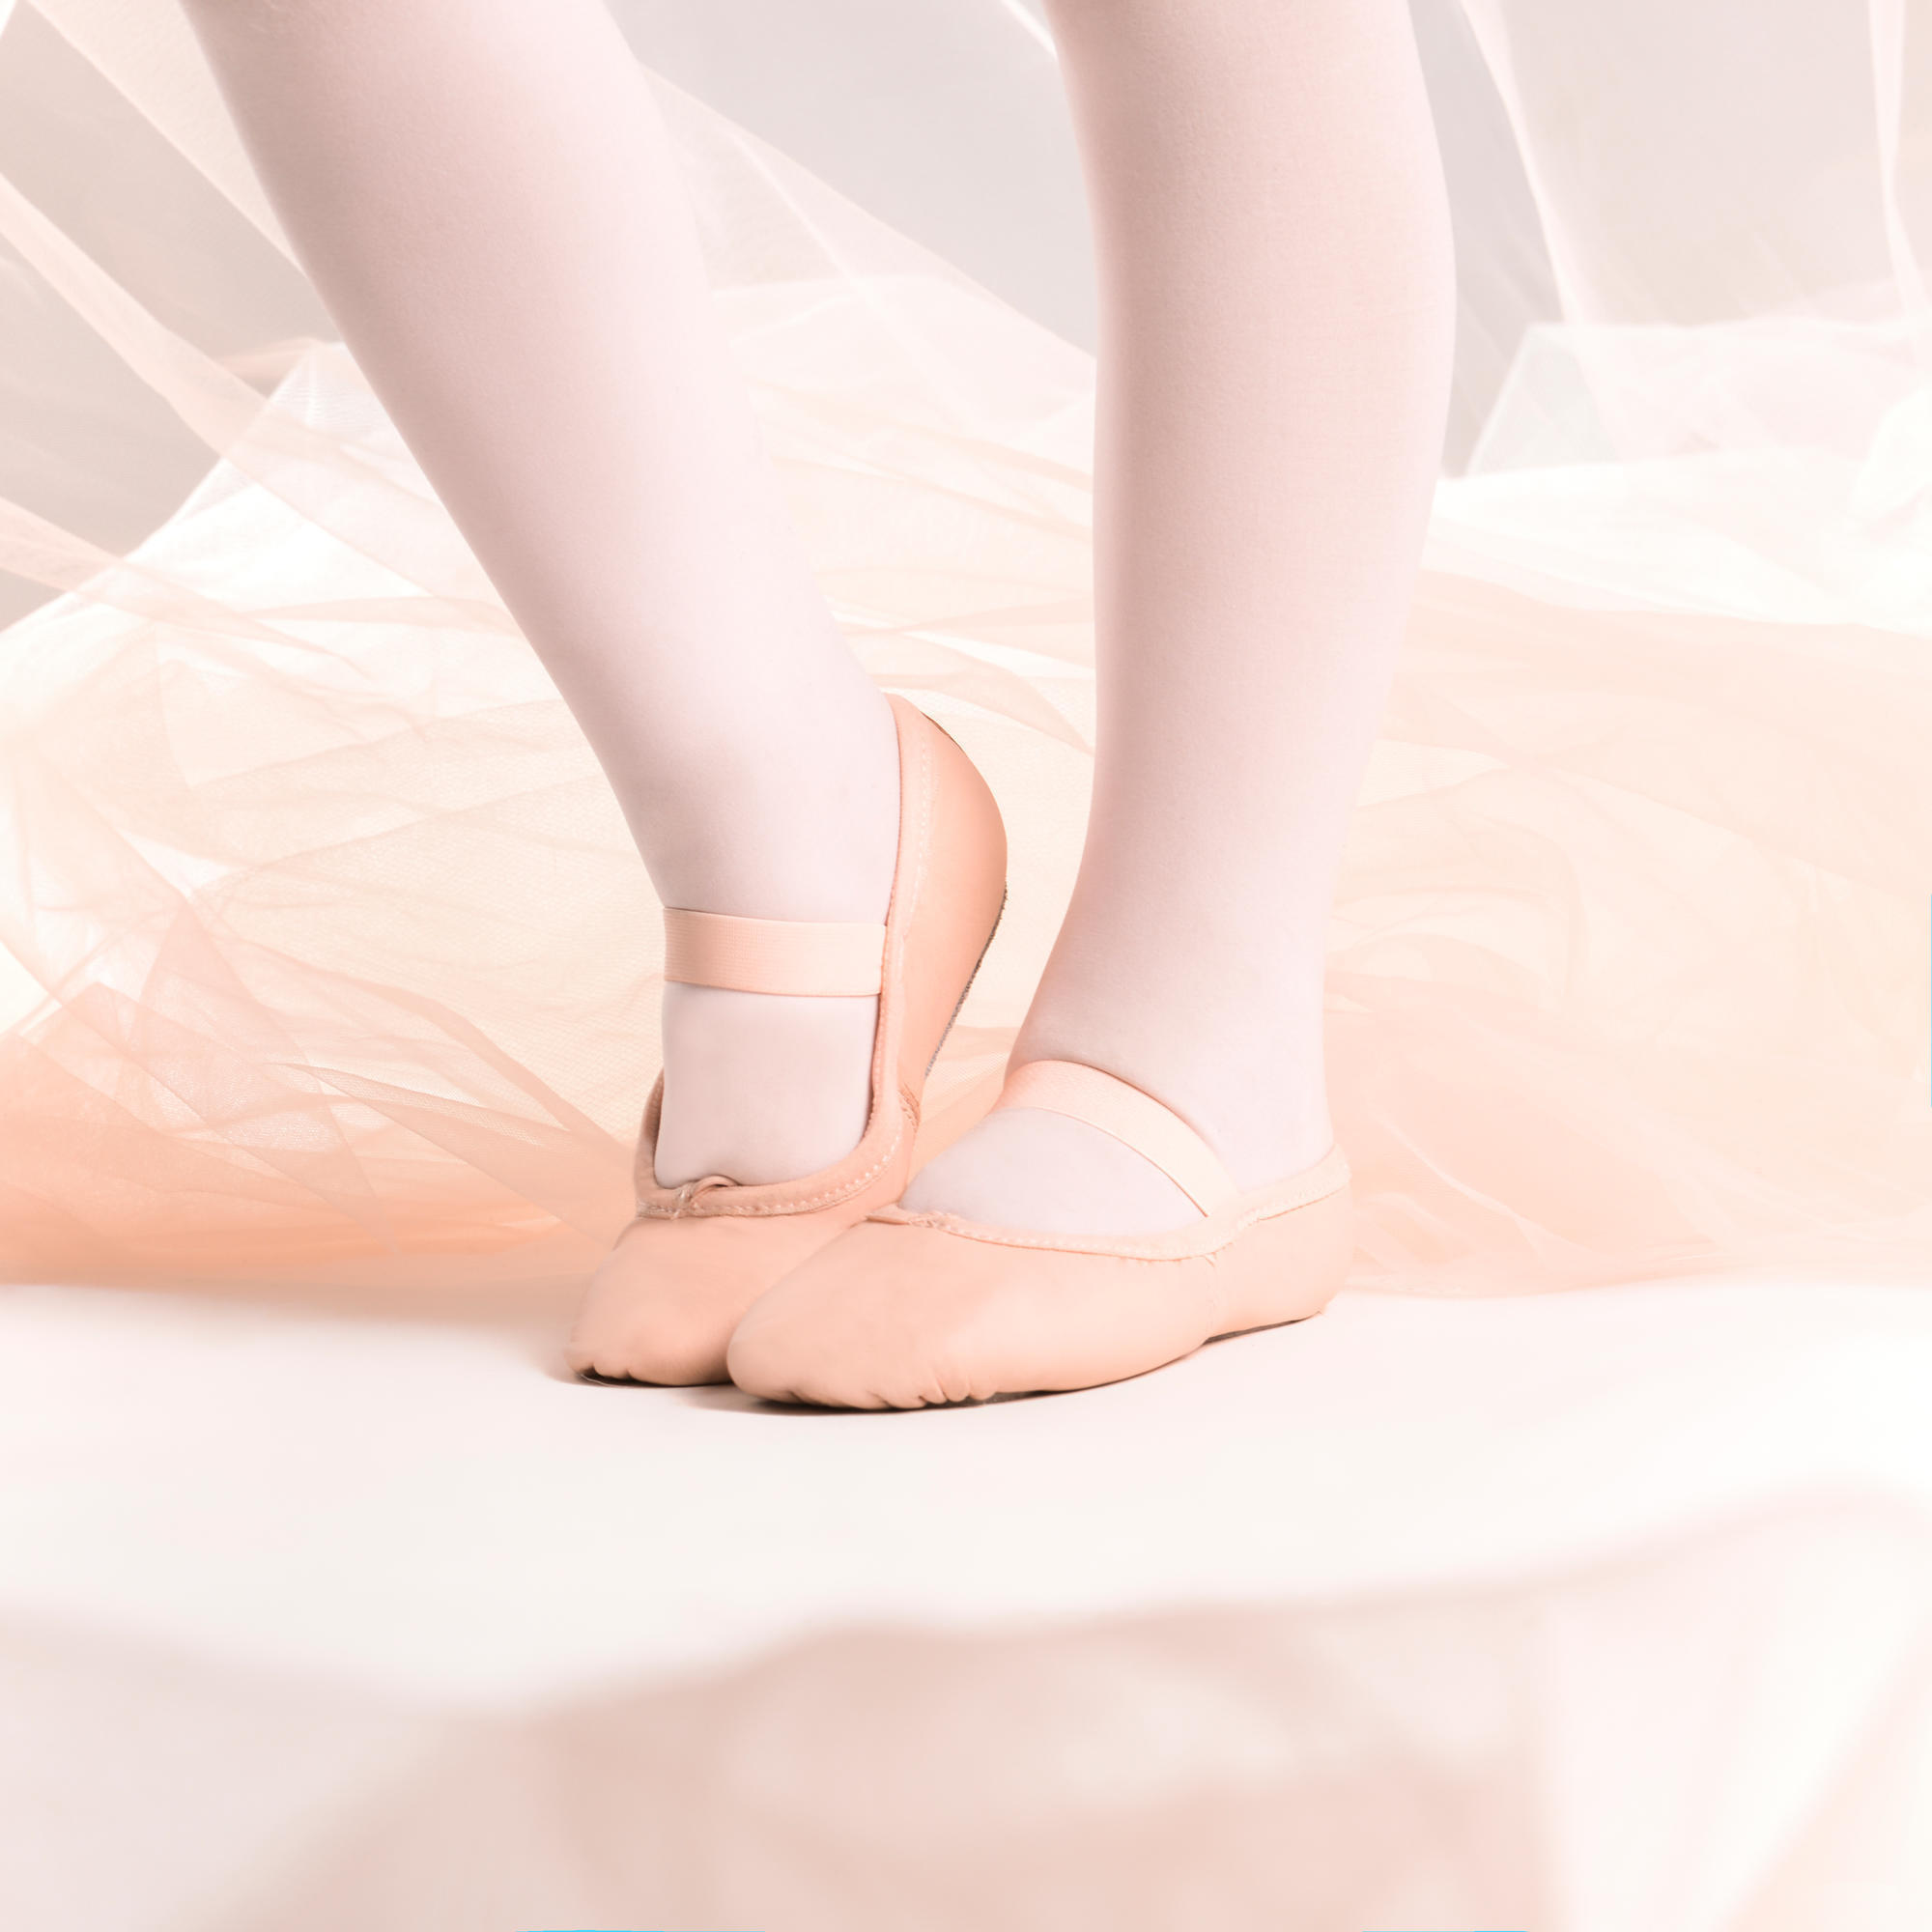 Demi-poante balet piele talpă întreagă roz mărimile 25-40 decathlon.ro